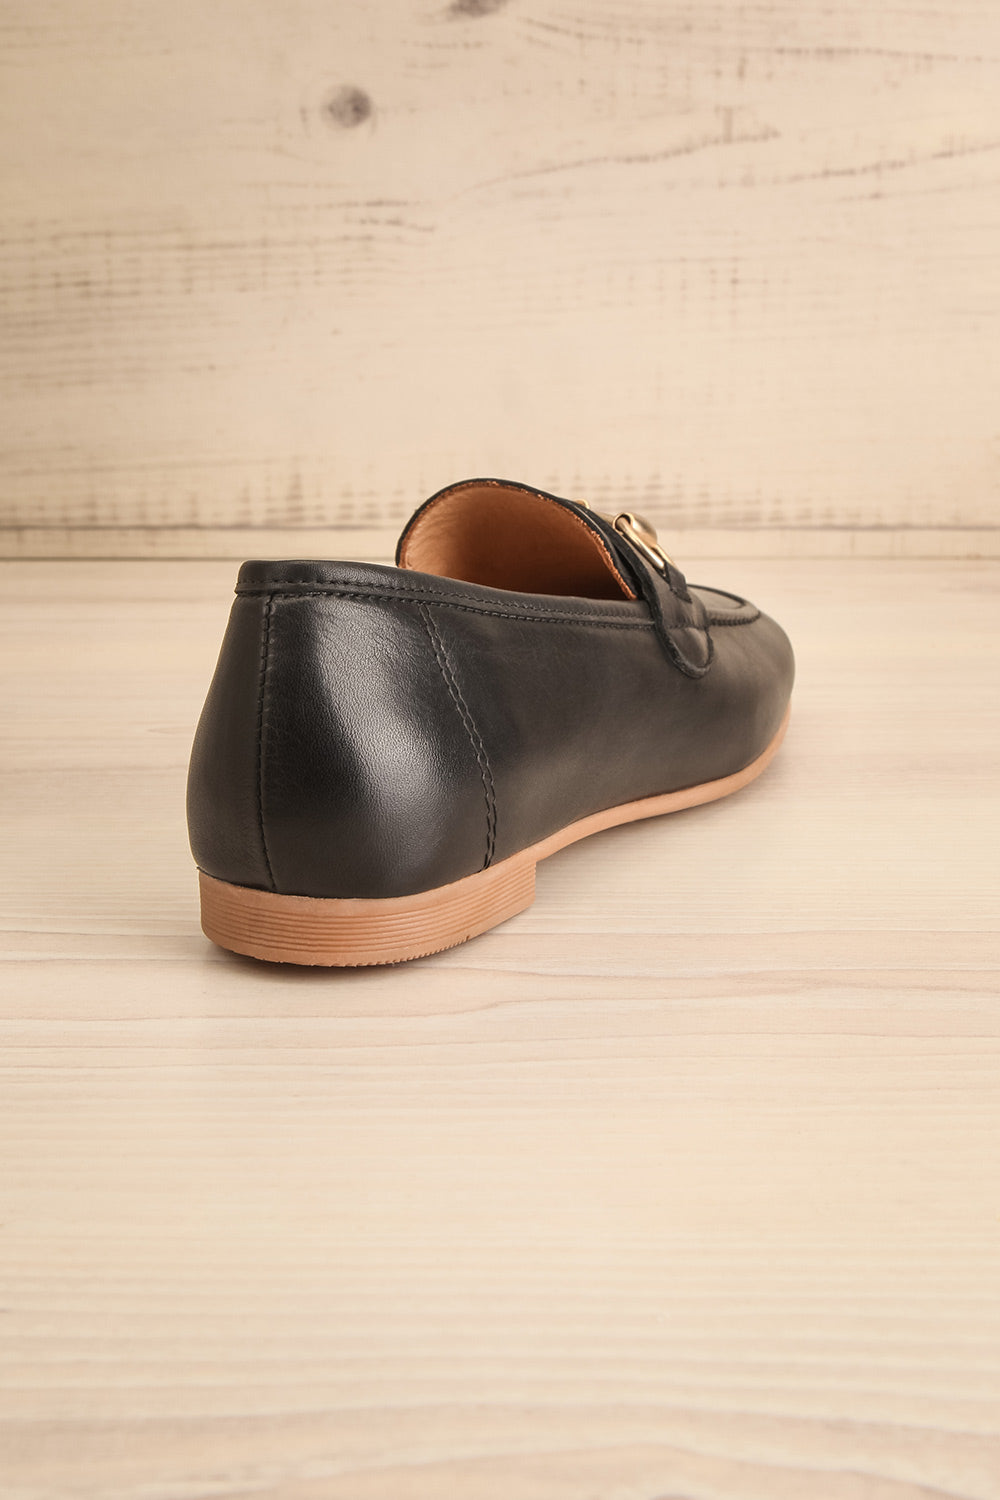 Fernn Black Leather Loafers | La petite garçonne back view